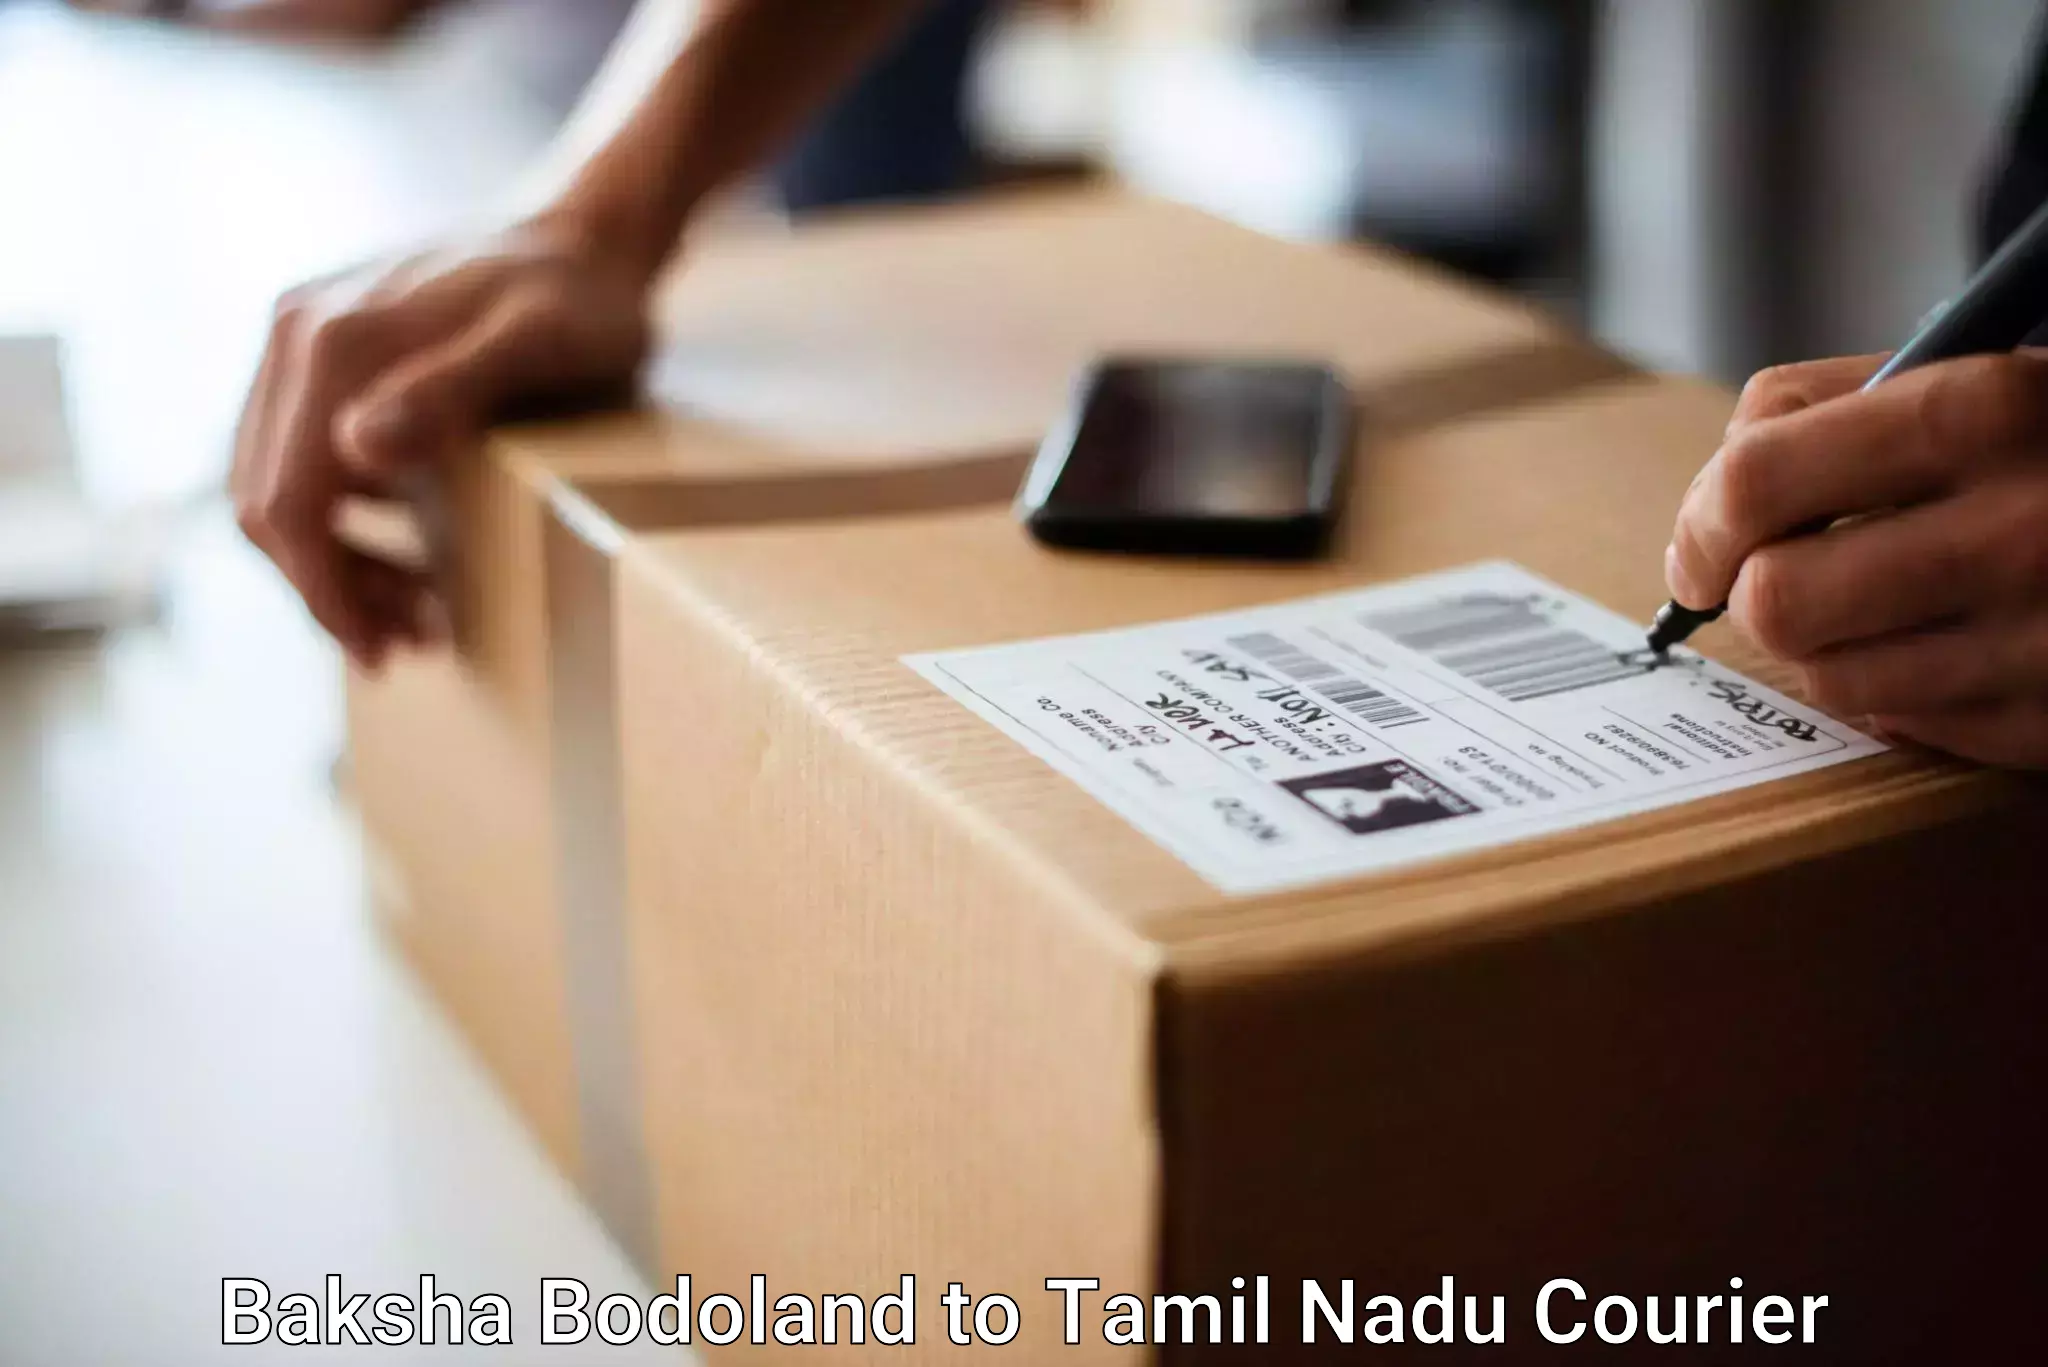 Luggage shipment tracking Baksha Bodoland to IIT Madras